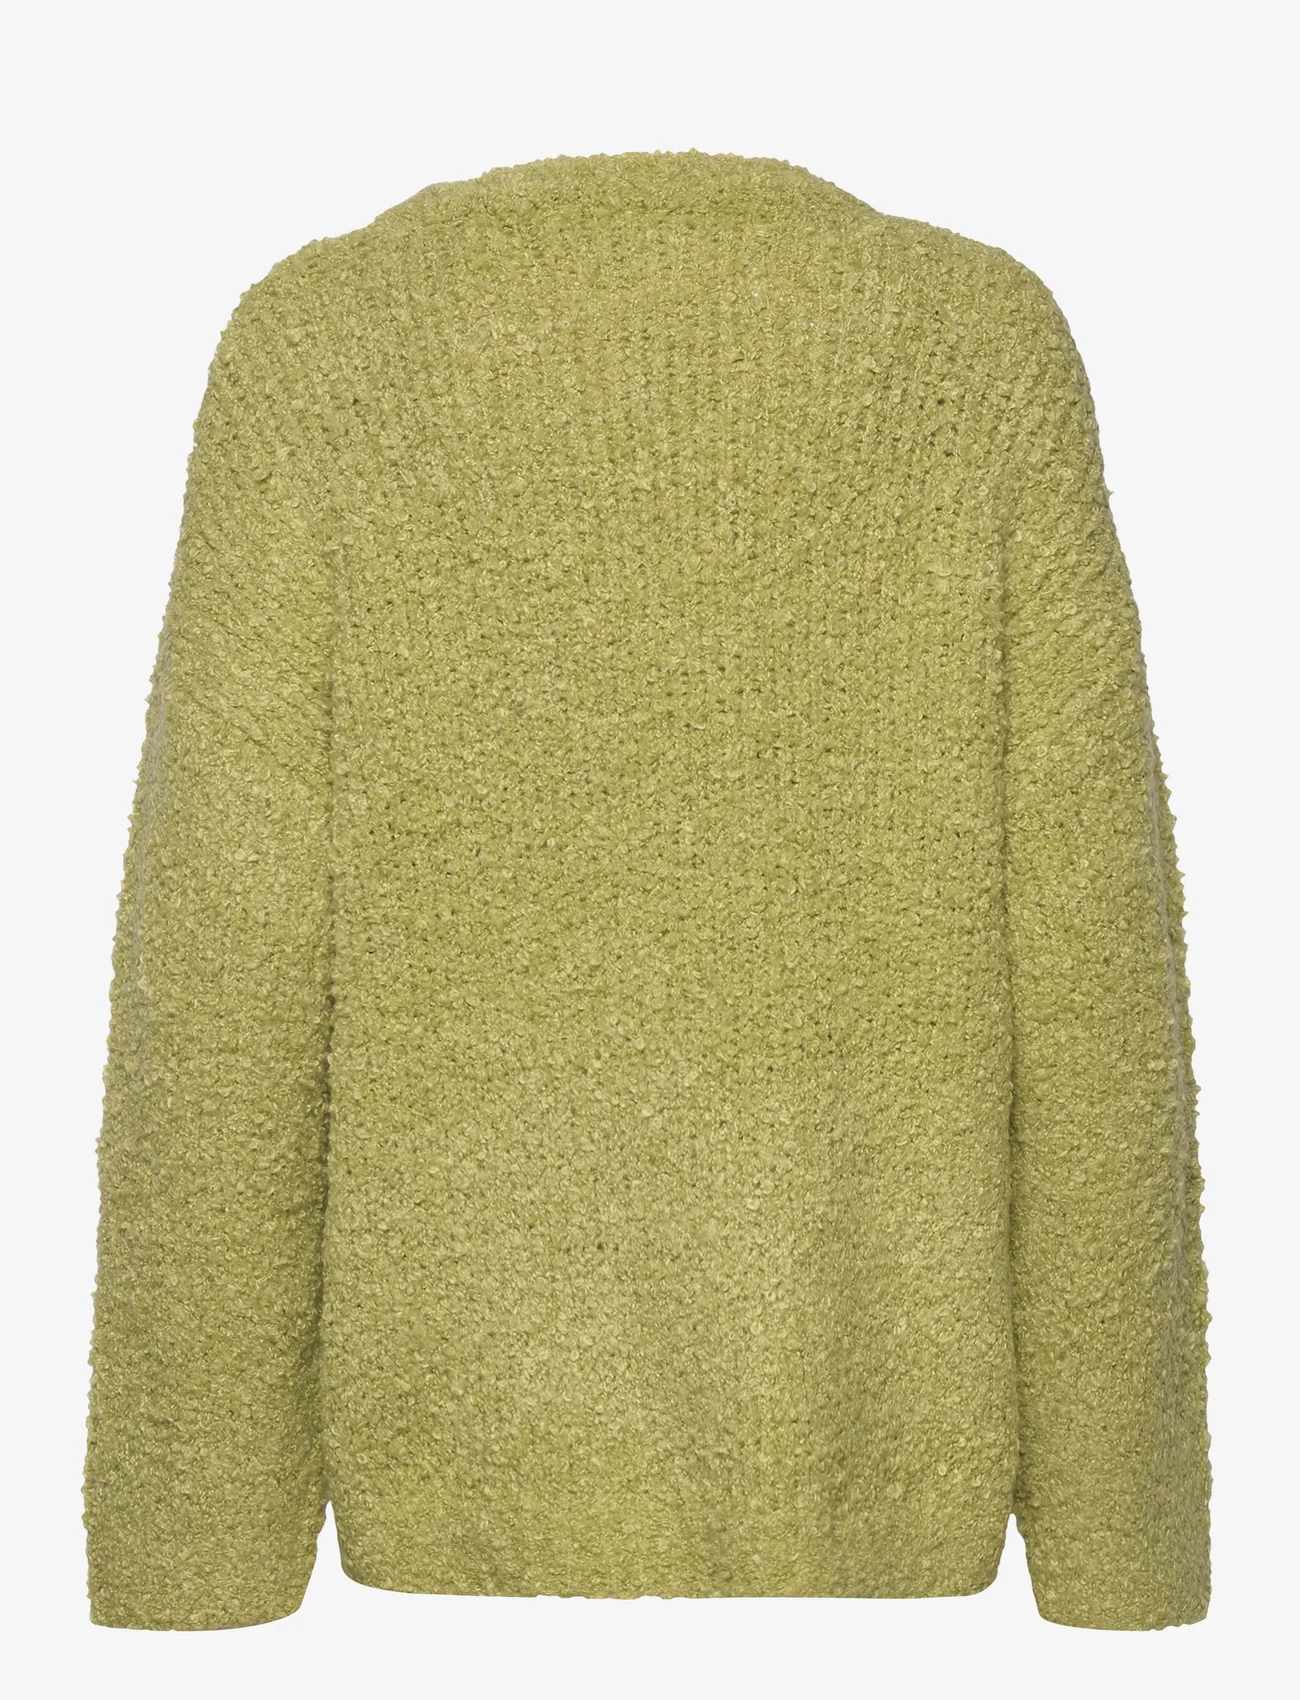 Résumé - PeachRS Knit Blouse - pullover - poison green - 1